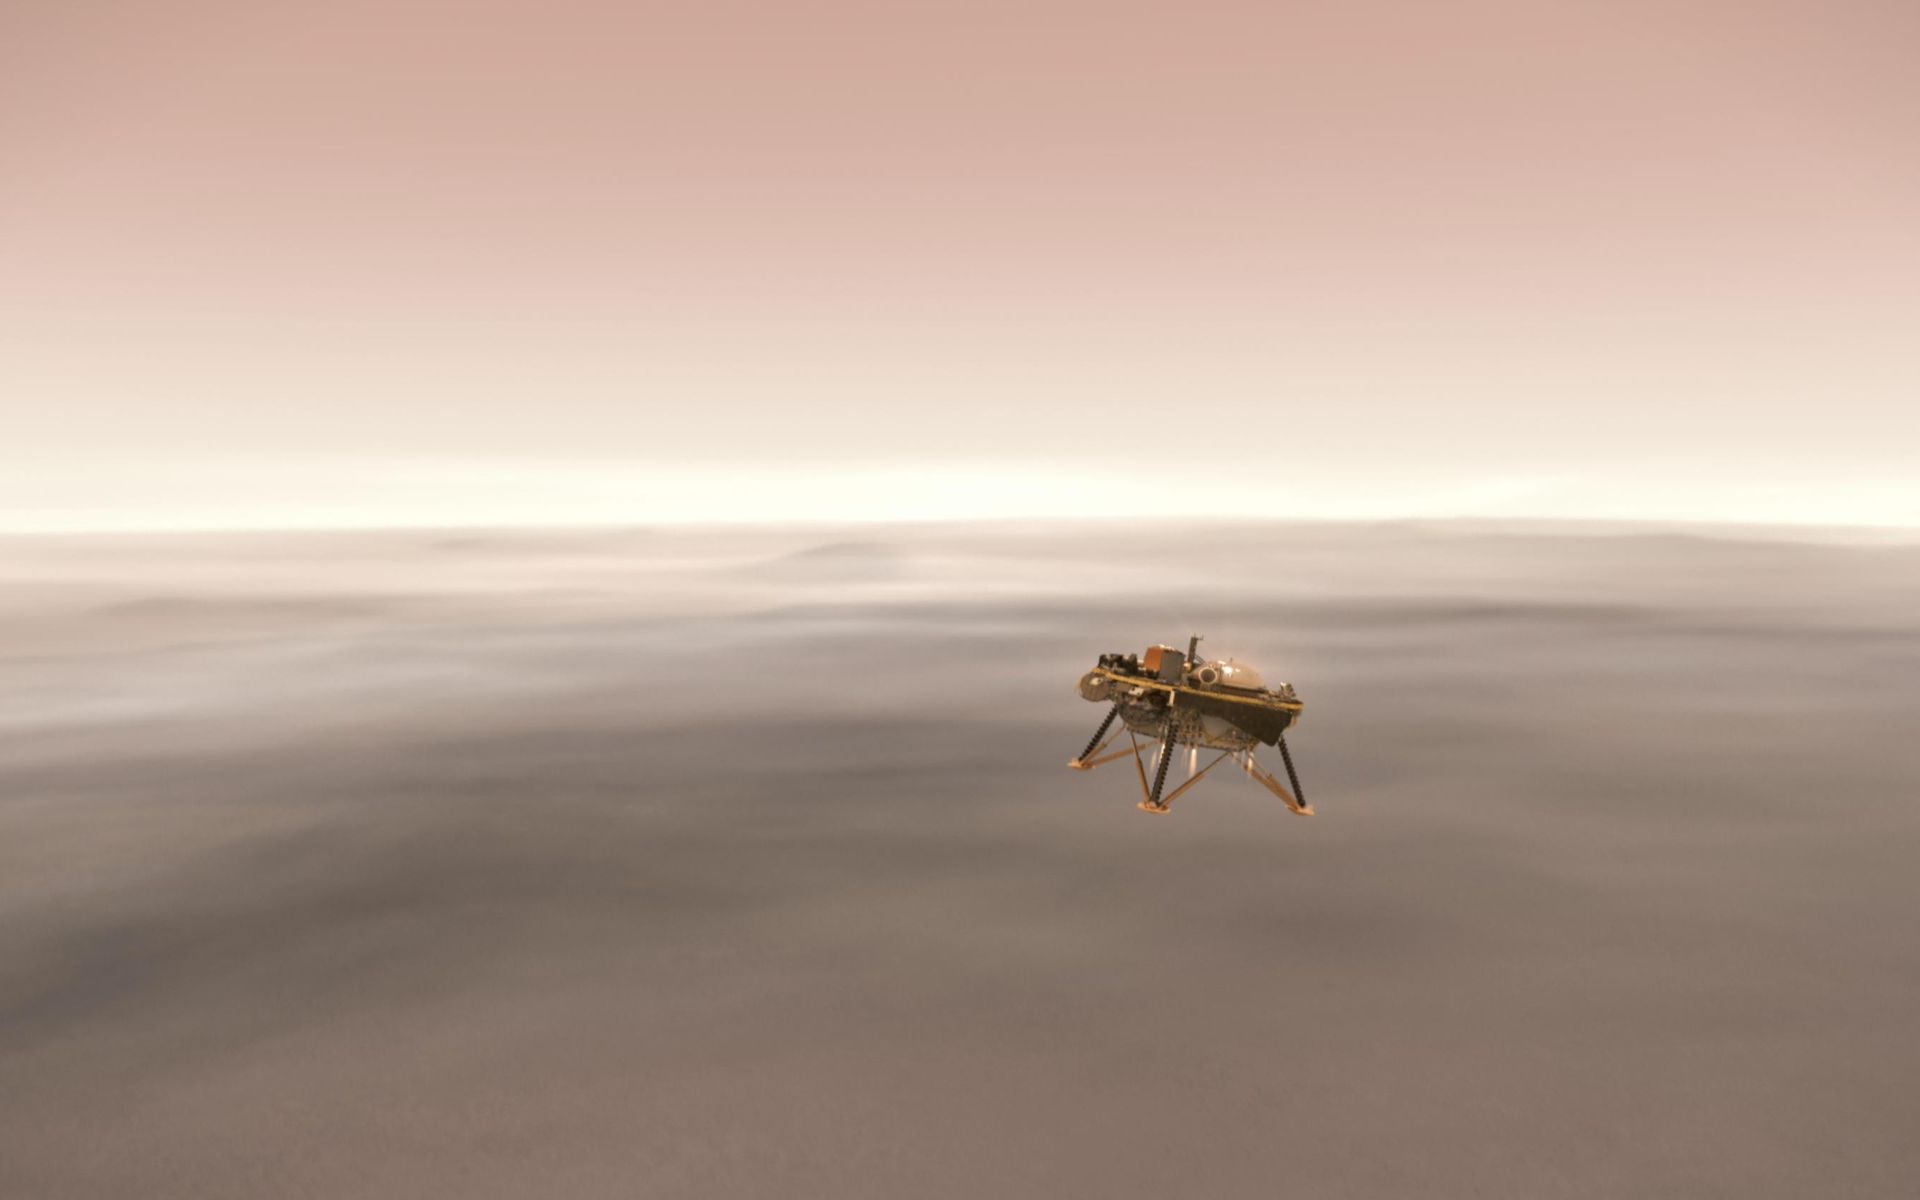 Le choix du site d’atterrissage du rover est toujours un casse-tête pour les scientifiques. En image, la descente du robot InSight. © Nasa, JPL